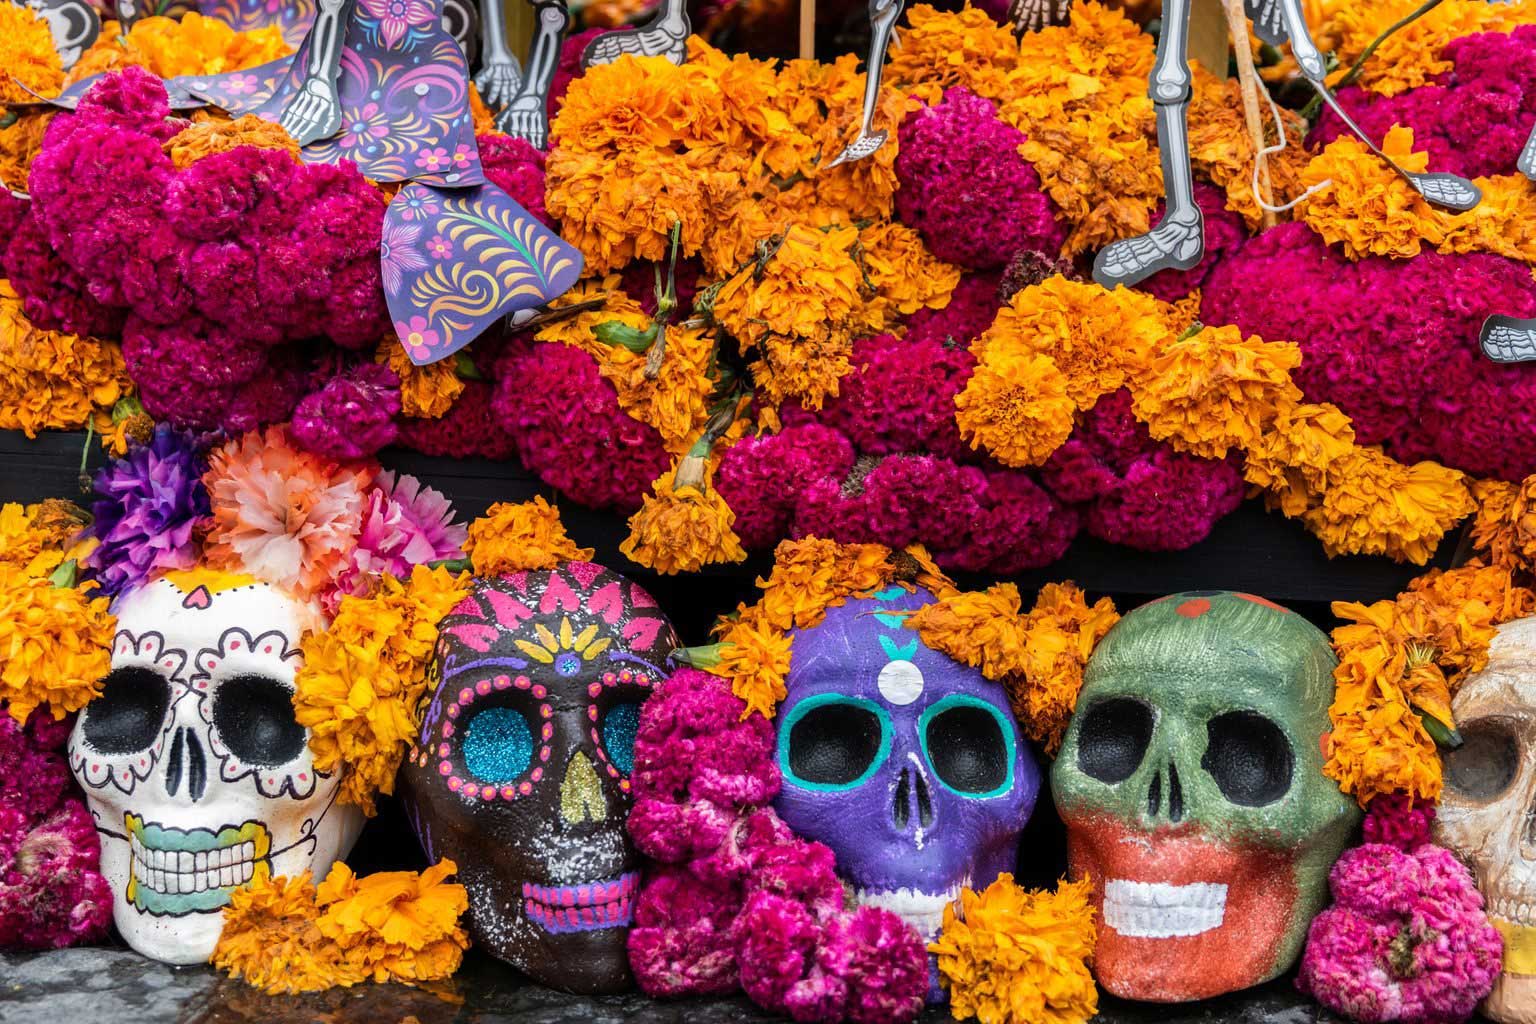 Honoring the dead Dia de los Muertos has colorful traditions, history in both Mexico, U.S.